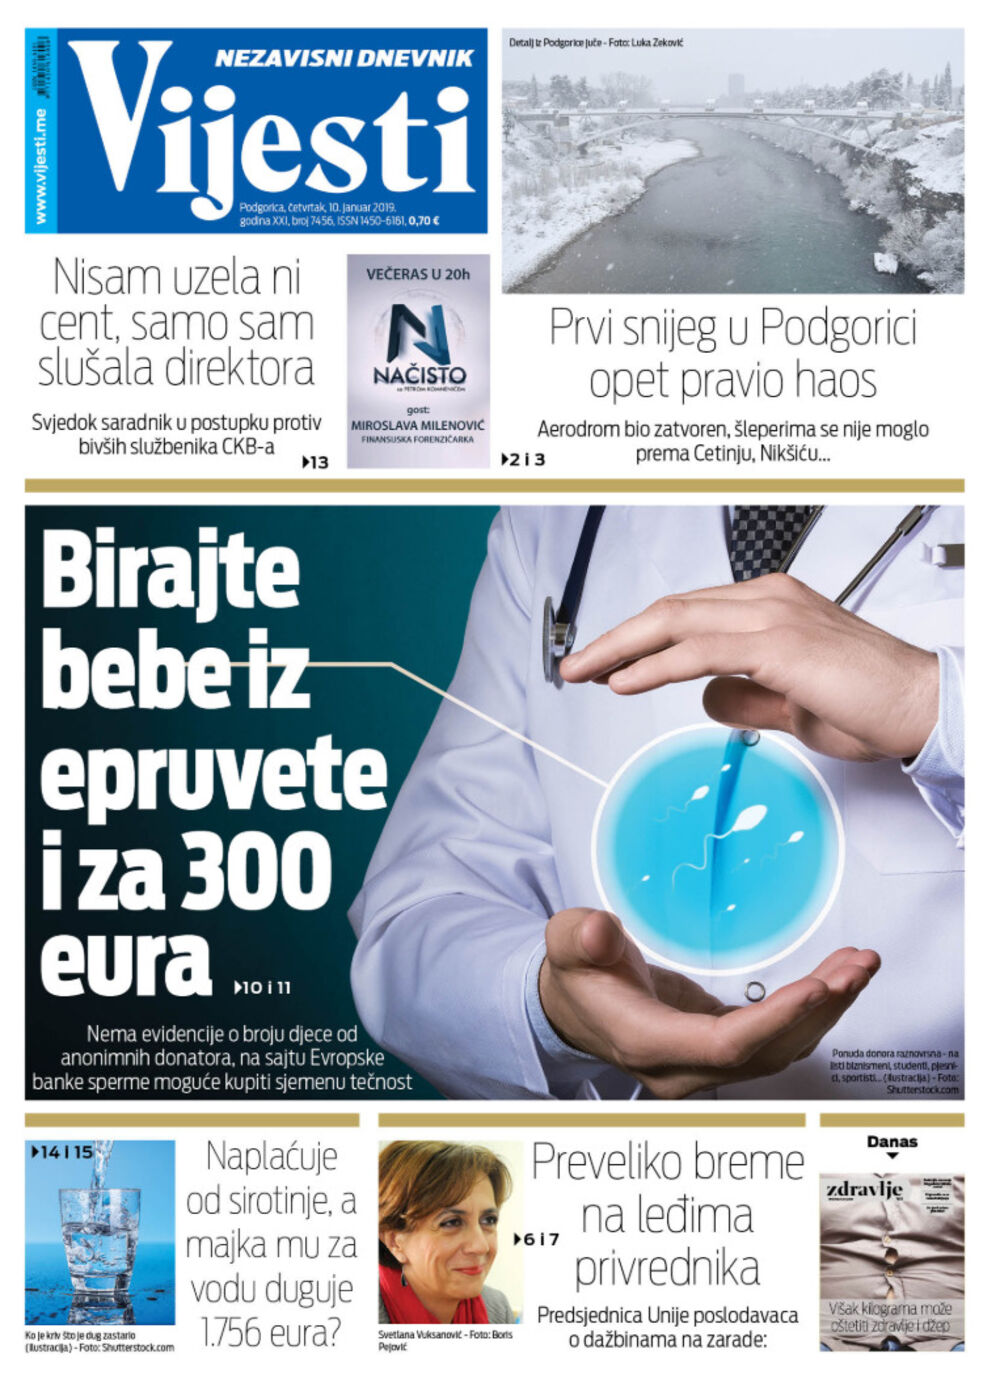 Naslovna strana "Vijesti" za 10. januar